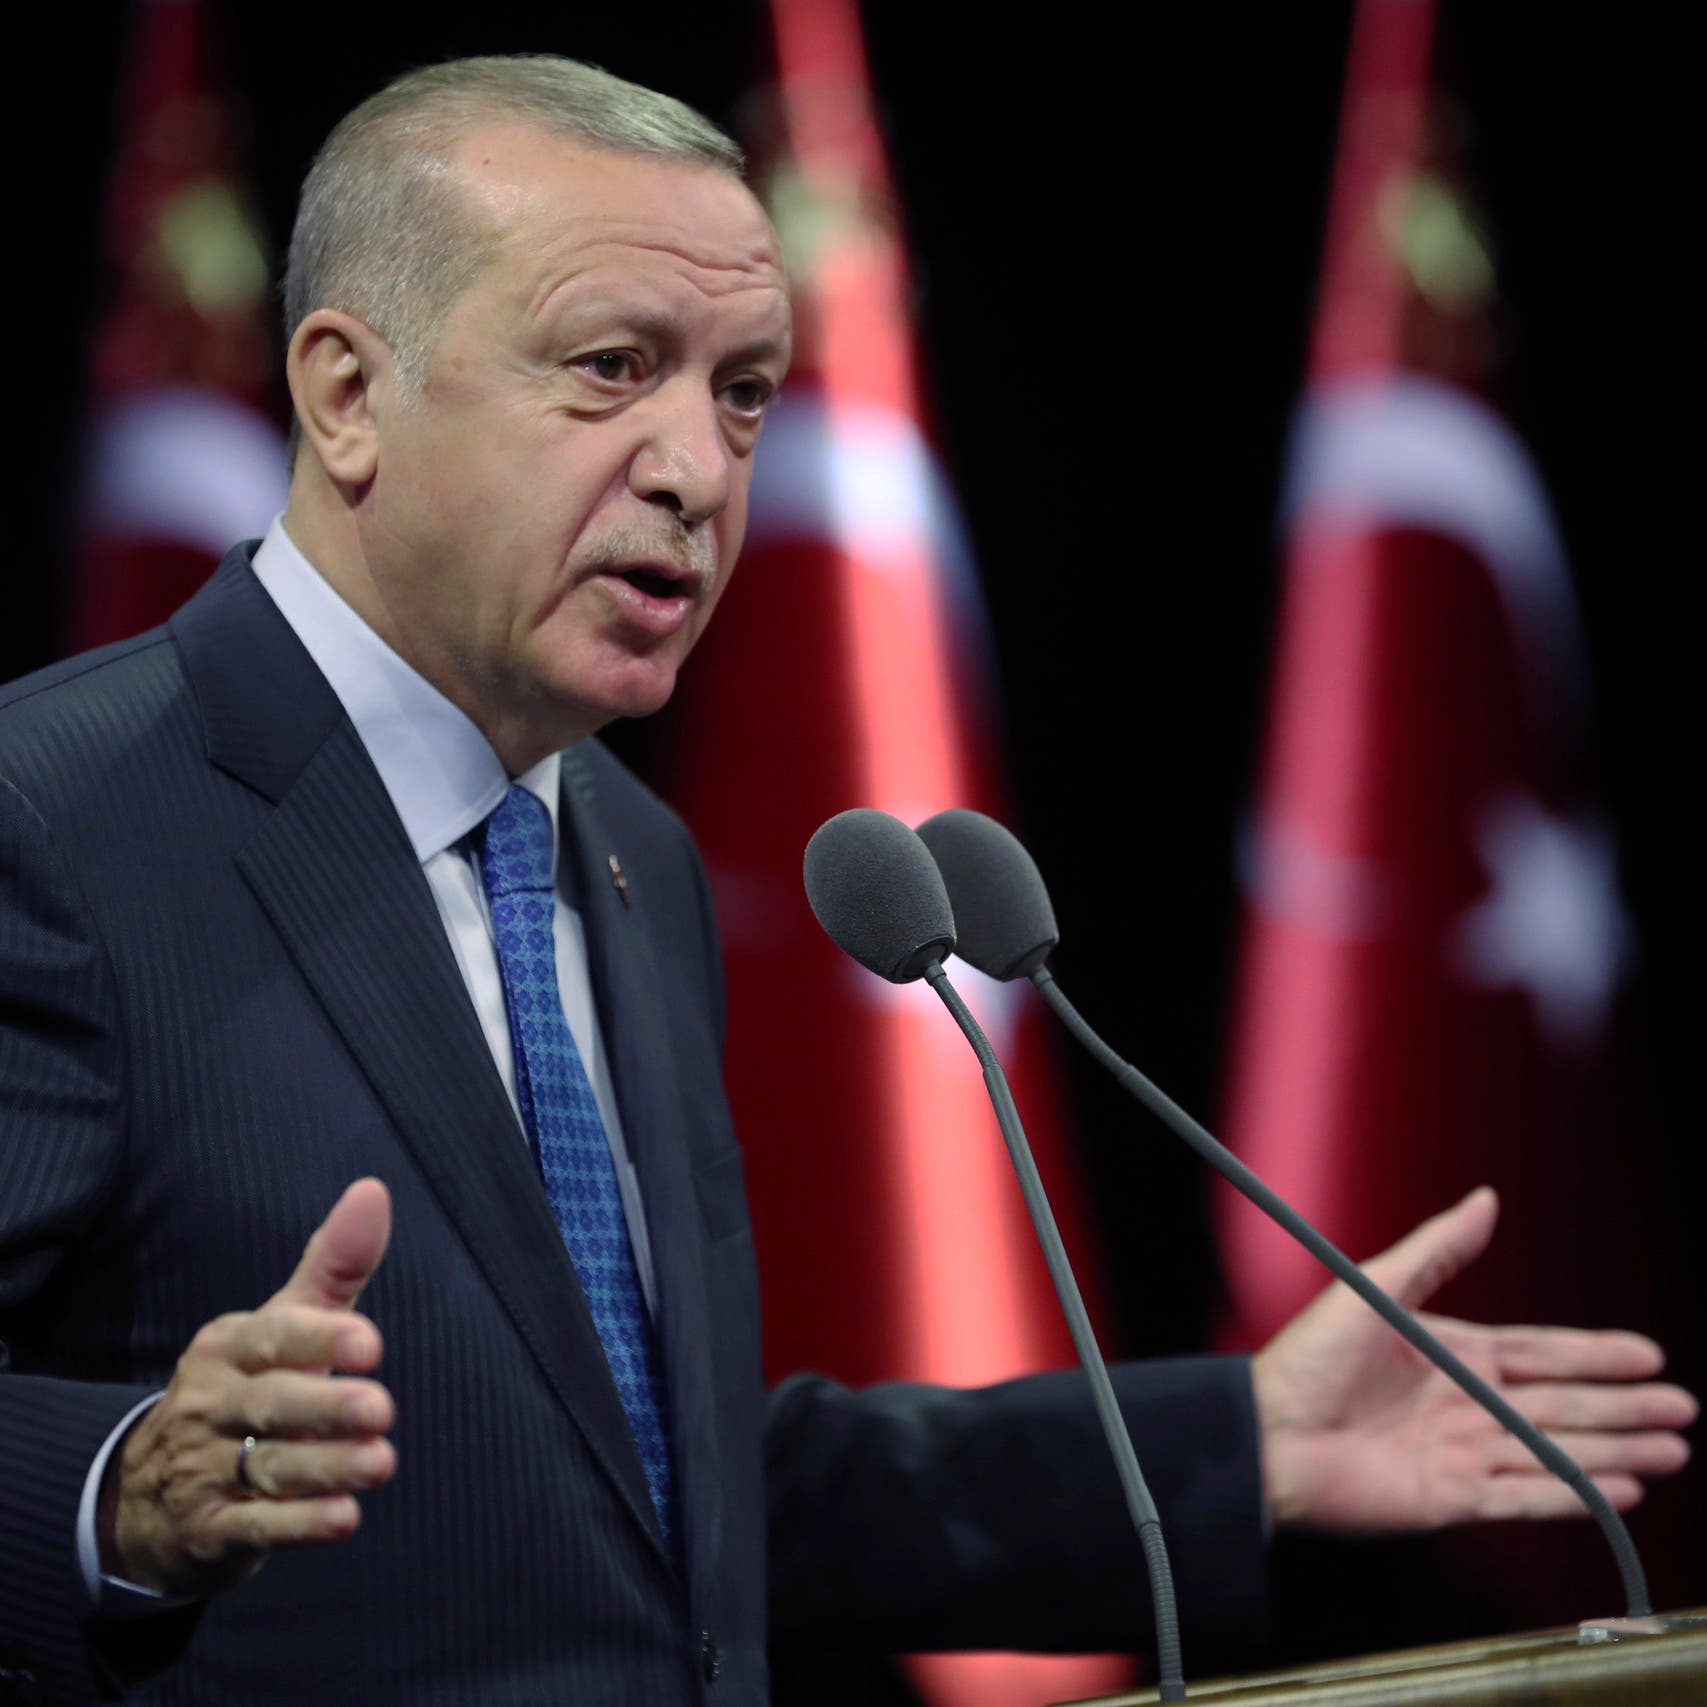 أردوغان يؤكد وجود قوات عسكرية لبلاده بقطر بزعم حفظ الأمن